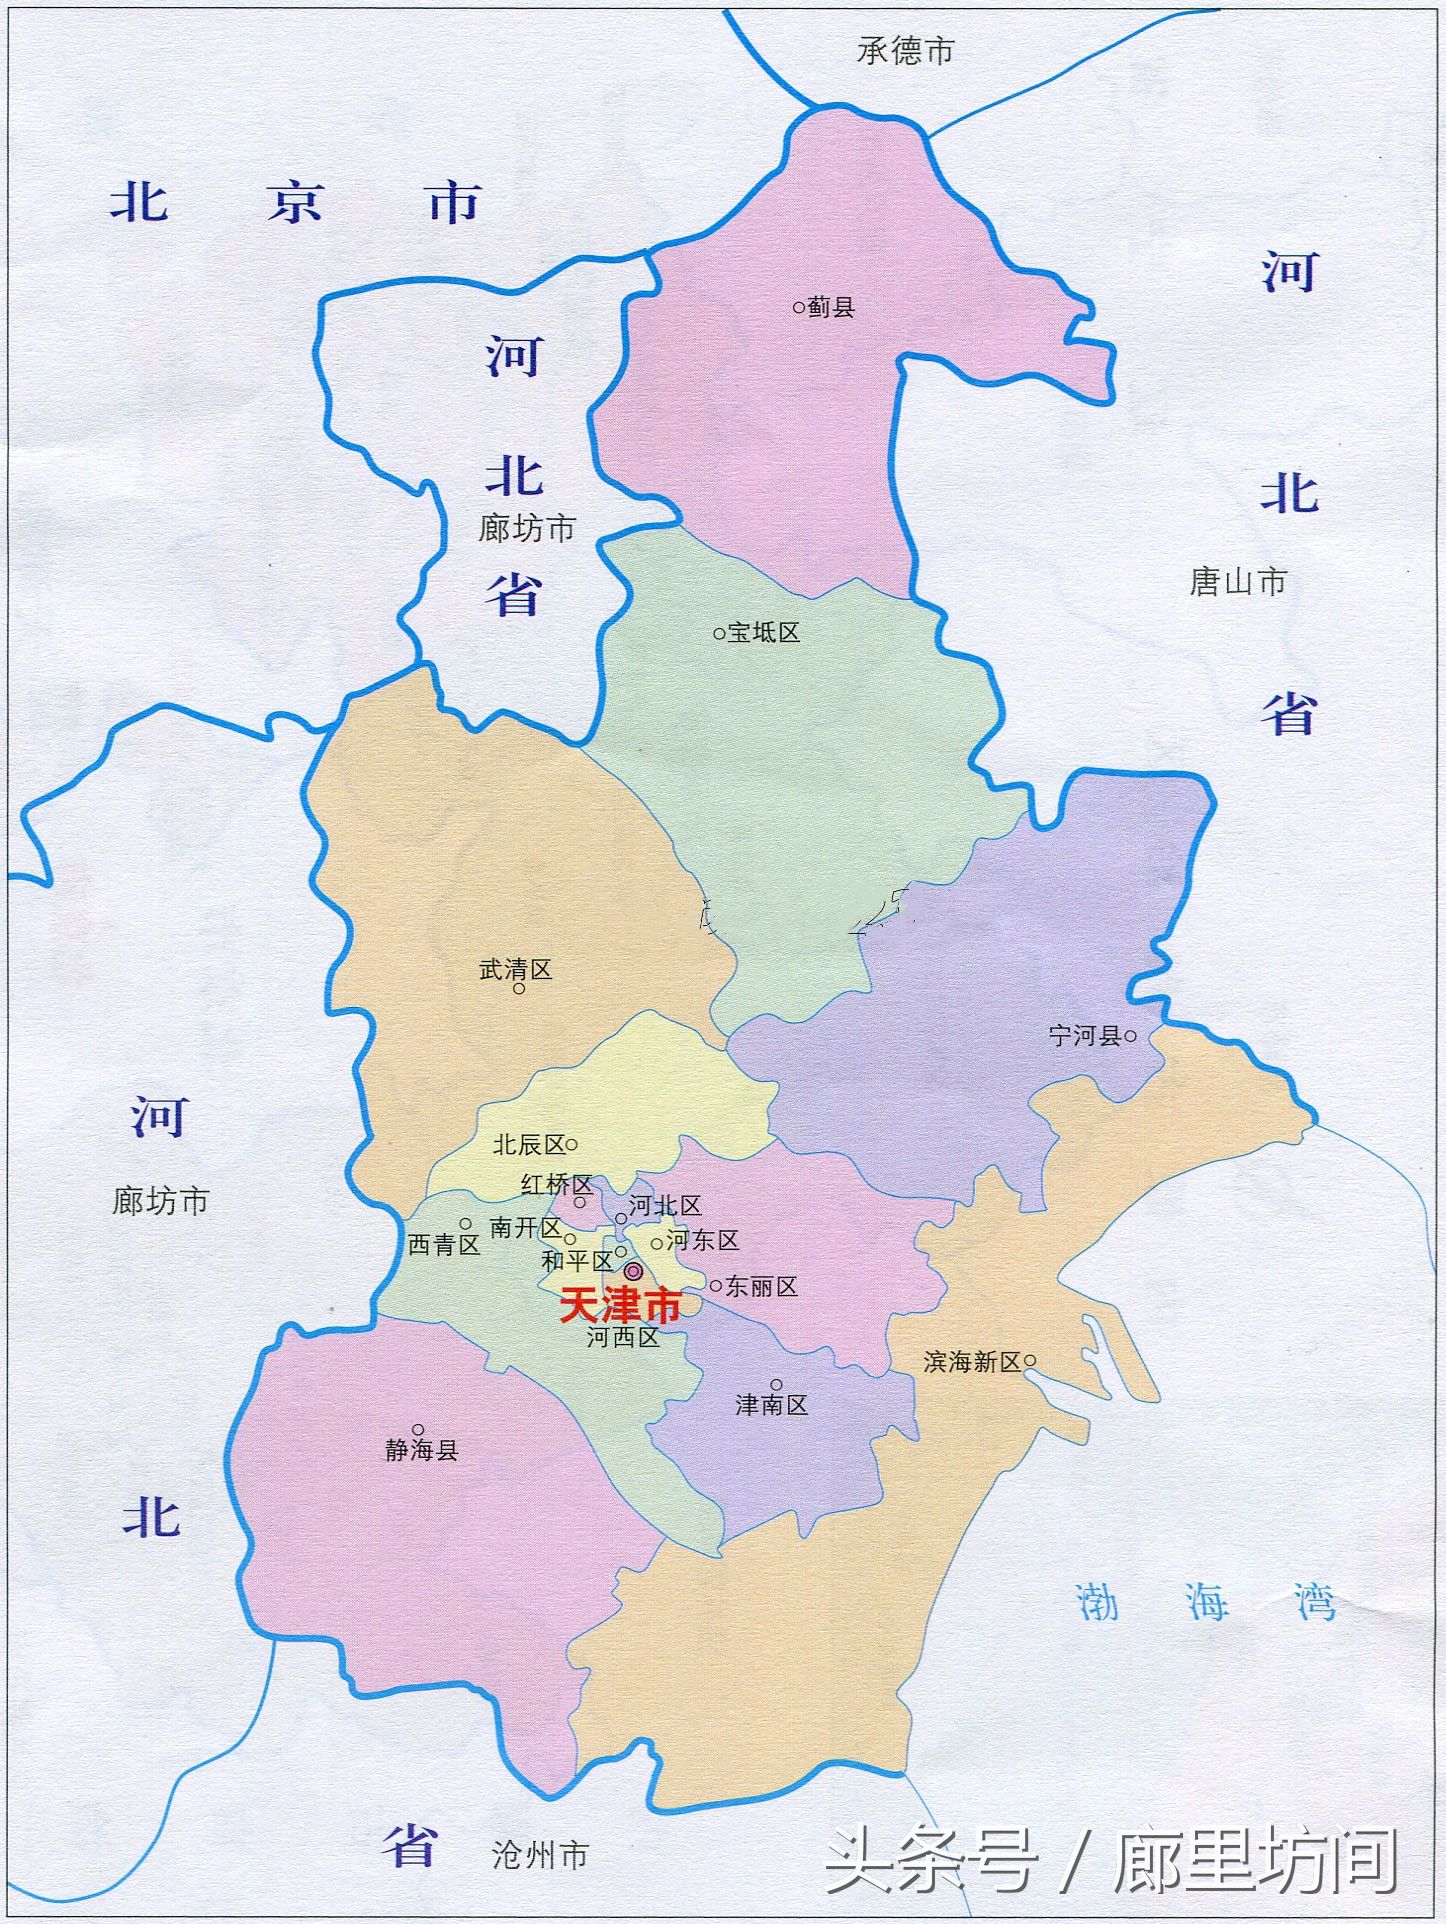 福建旅游资源地图 - 中国旅游地图 - 地理教师网